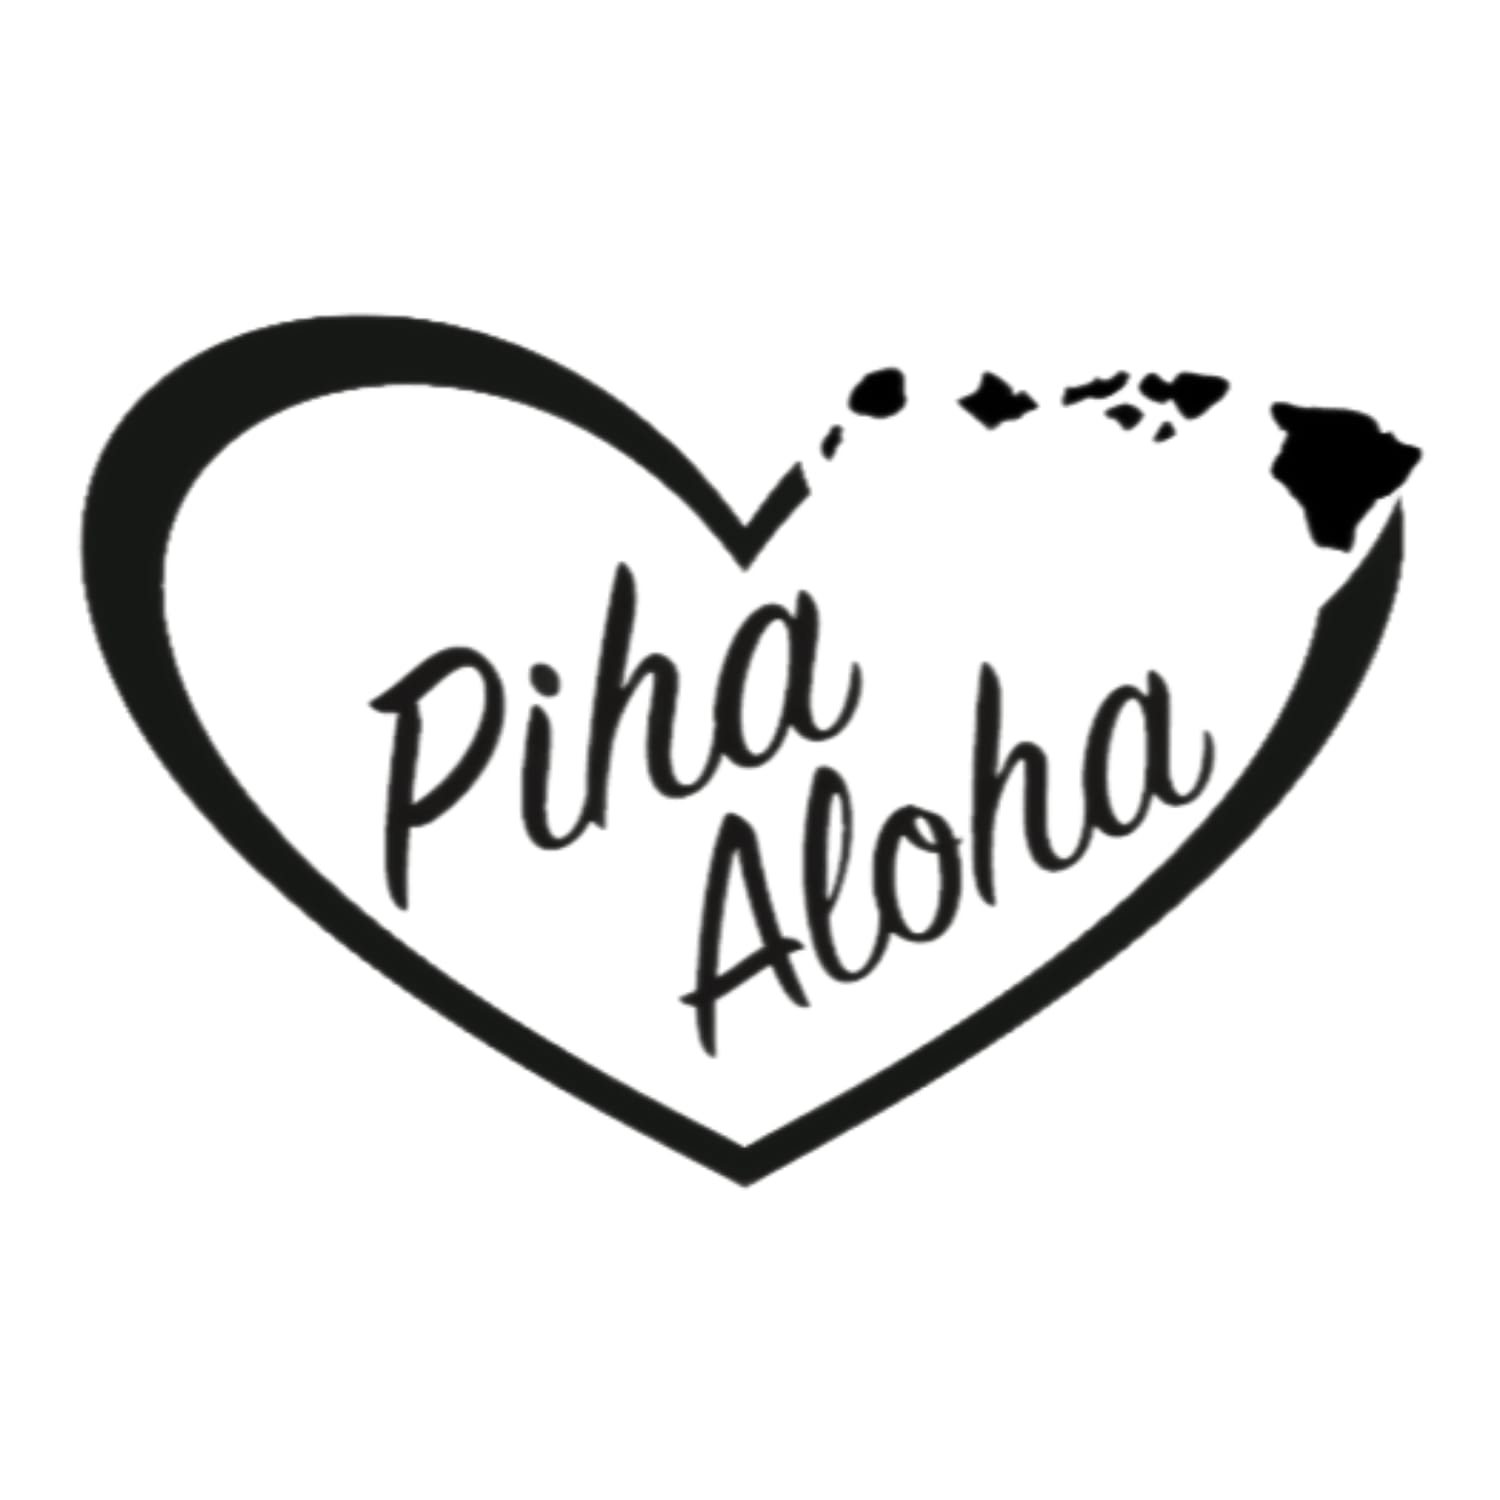 Piha Aloha, LLC